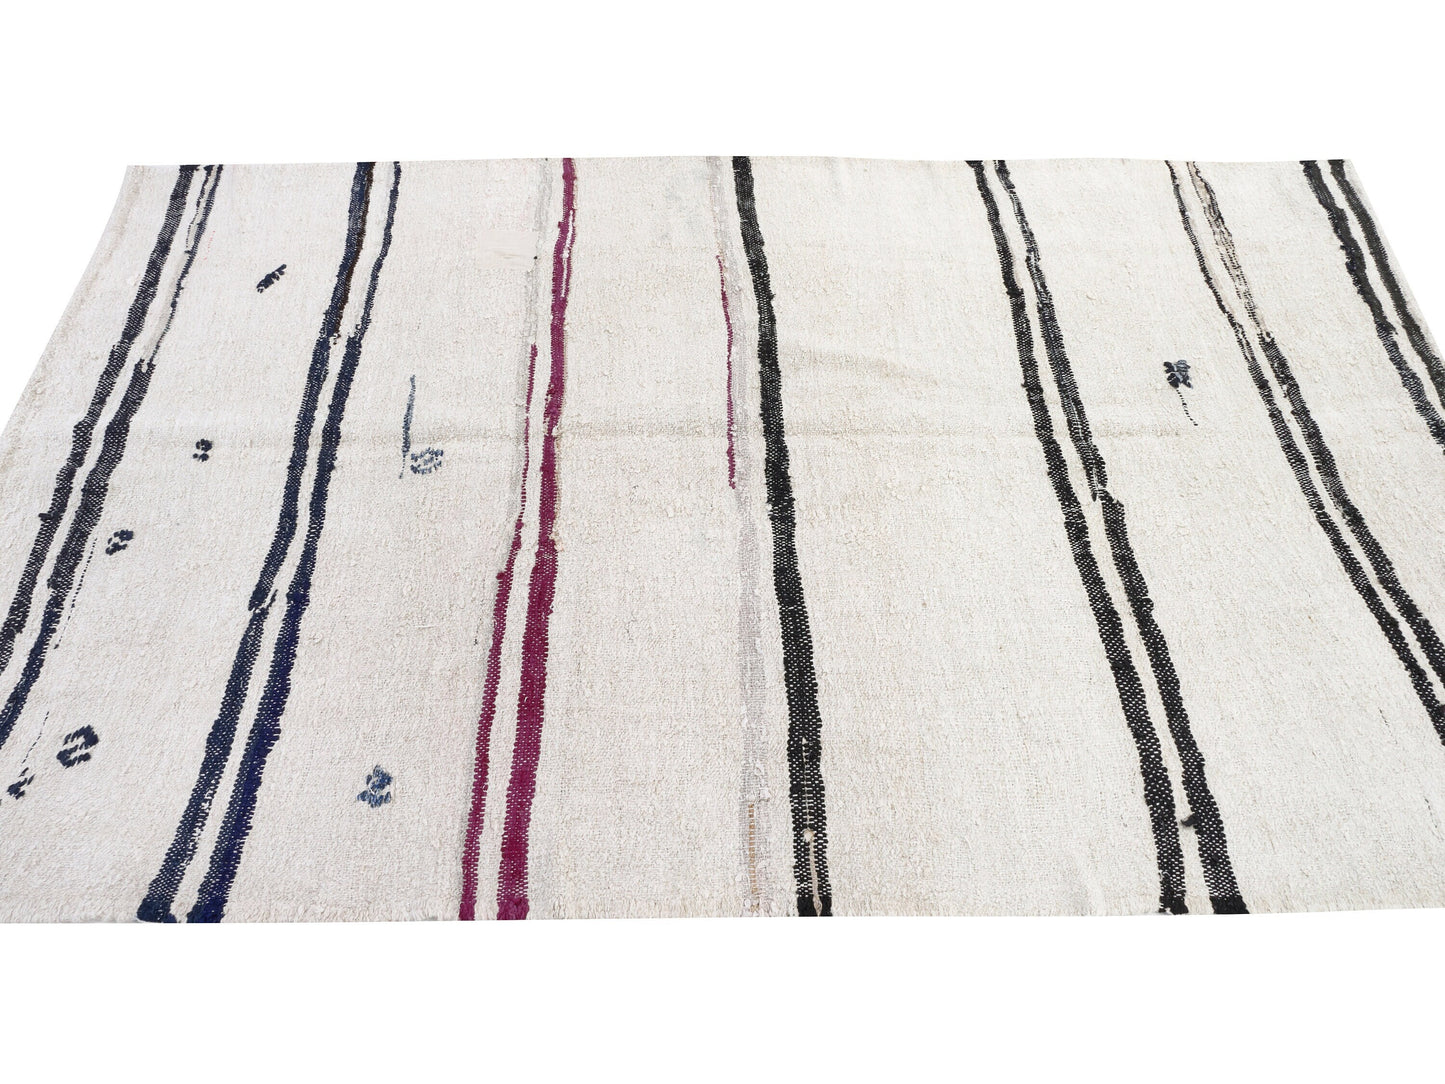 6x9 Area Kilim rug, Turkish Vintage Hemp Kilim rug,White Black Kilim rug , Bedroom rug, Minimalist decor, 9691